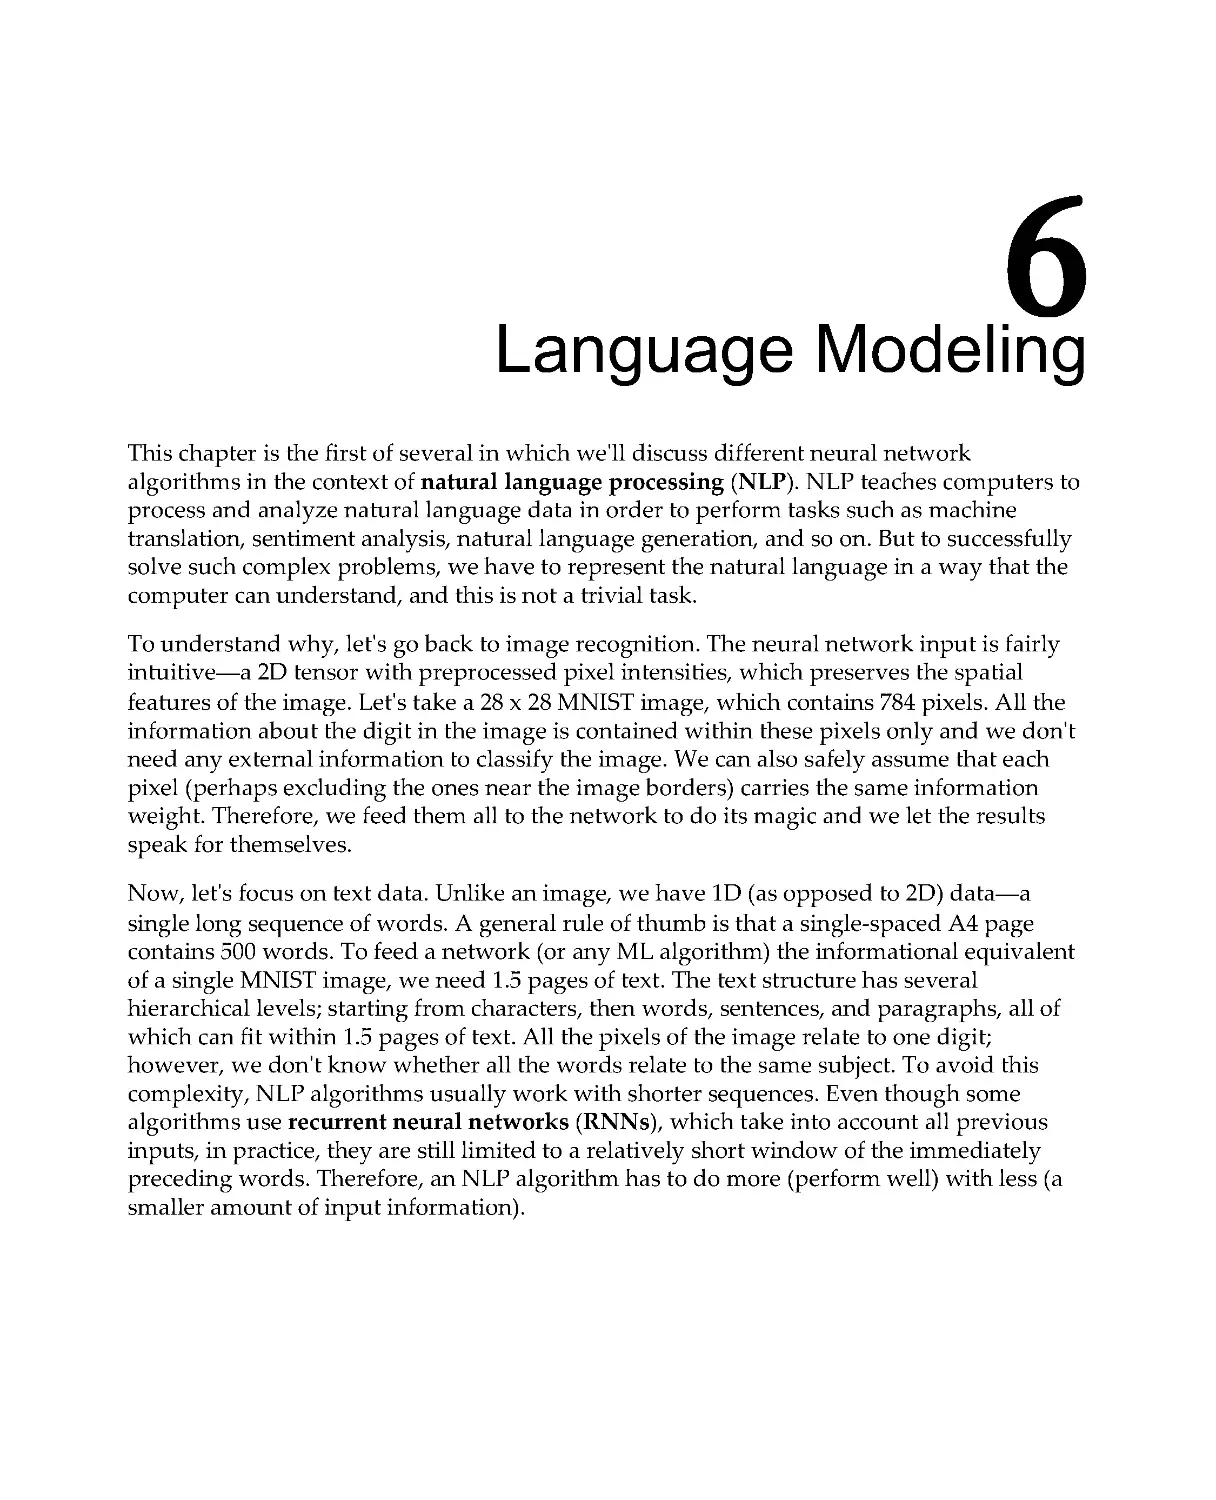 Chapter 6: Language Modeling